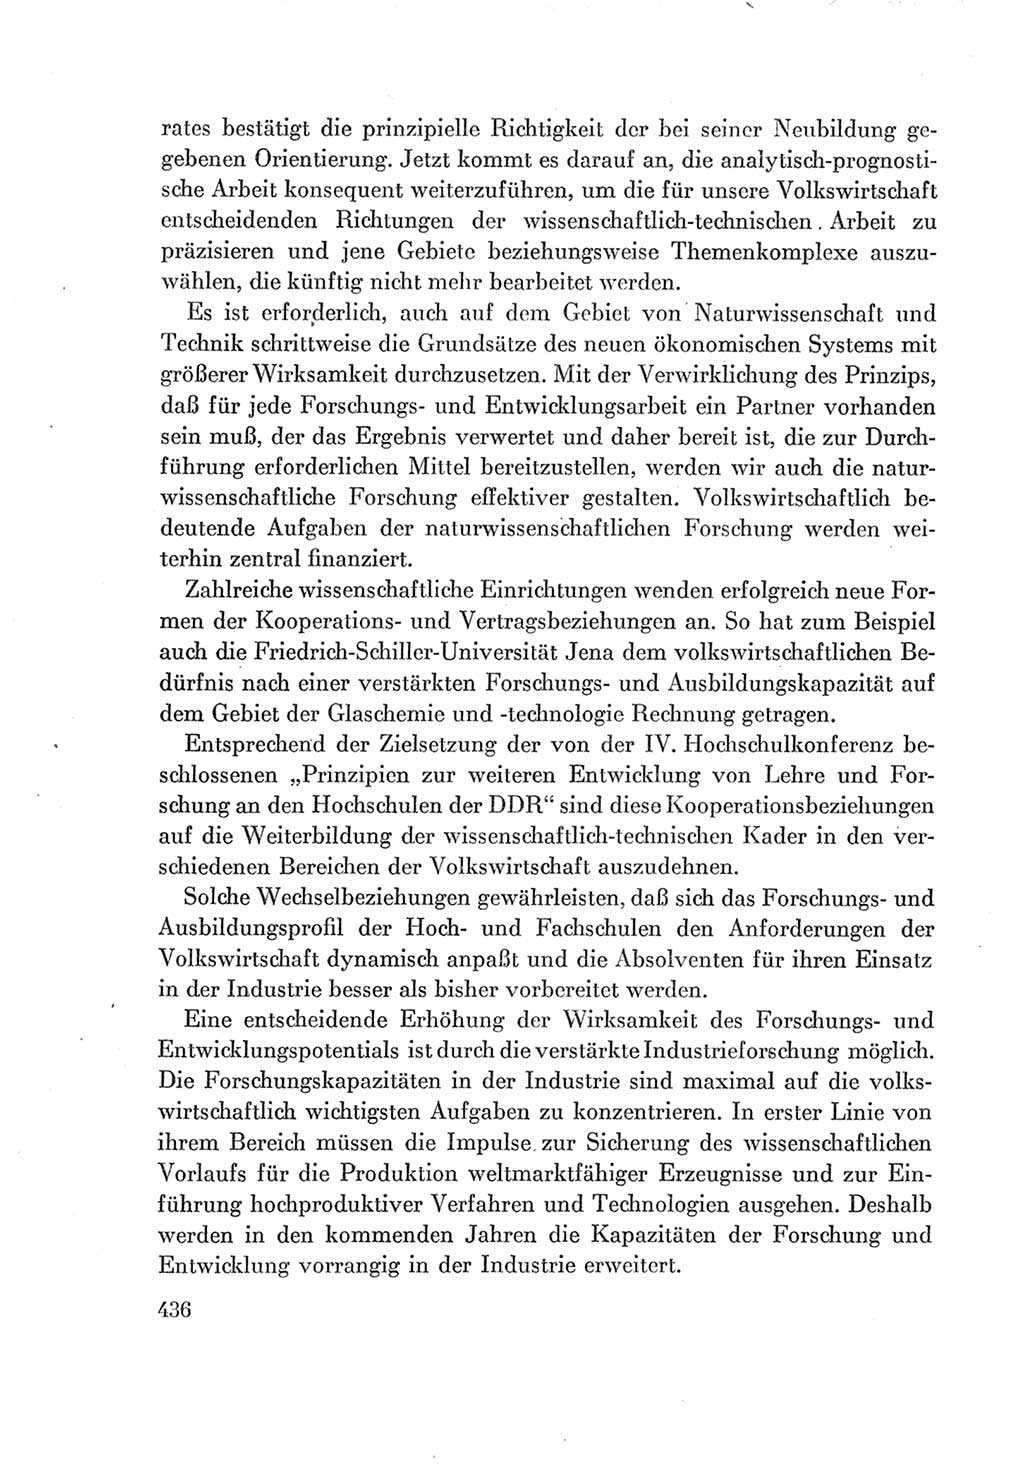 Protokoll der Verhandlungen des Ⅶ. Parteitages der Sozialistischen Einheitspartei Deutschlands (SED) [Deutsche Demokratische Republik (DDR)] 1967, Band Ⅰ, Seite 436 (Prot. Verh. Ⅶ. PT SED DDR 1967, Bd. Ⅰ, S. 436)